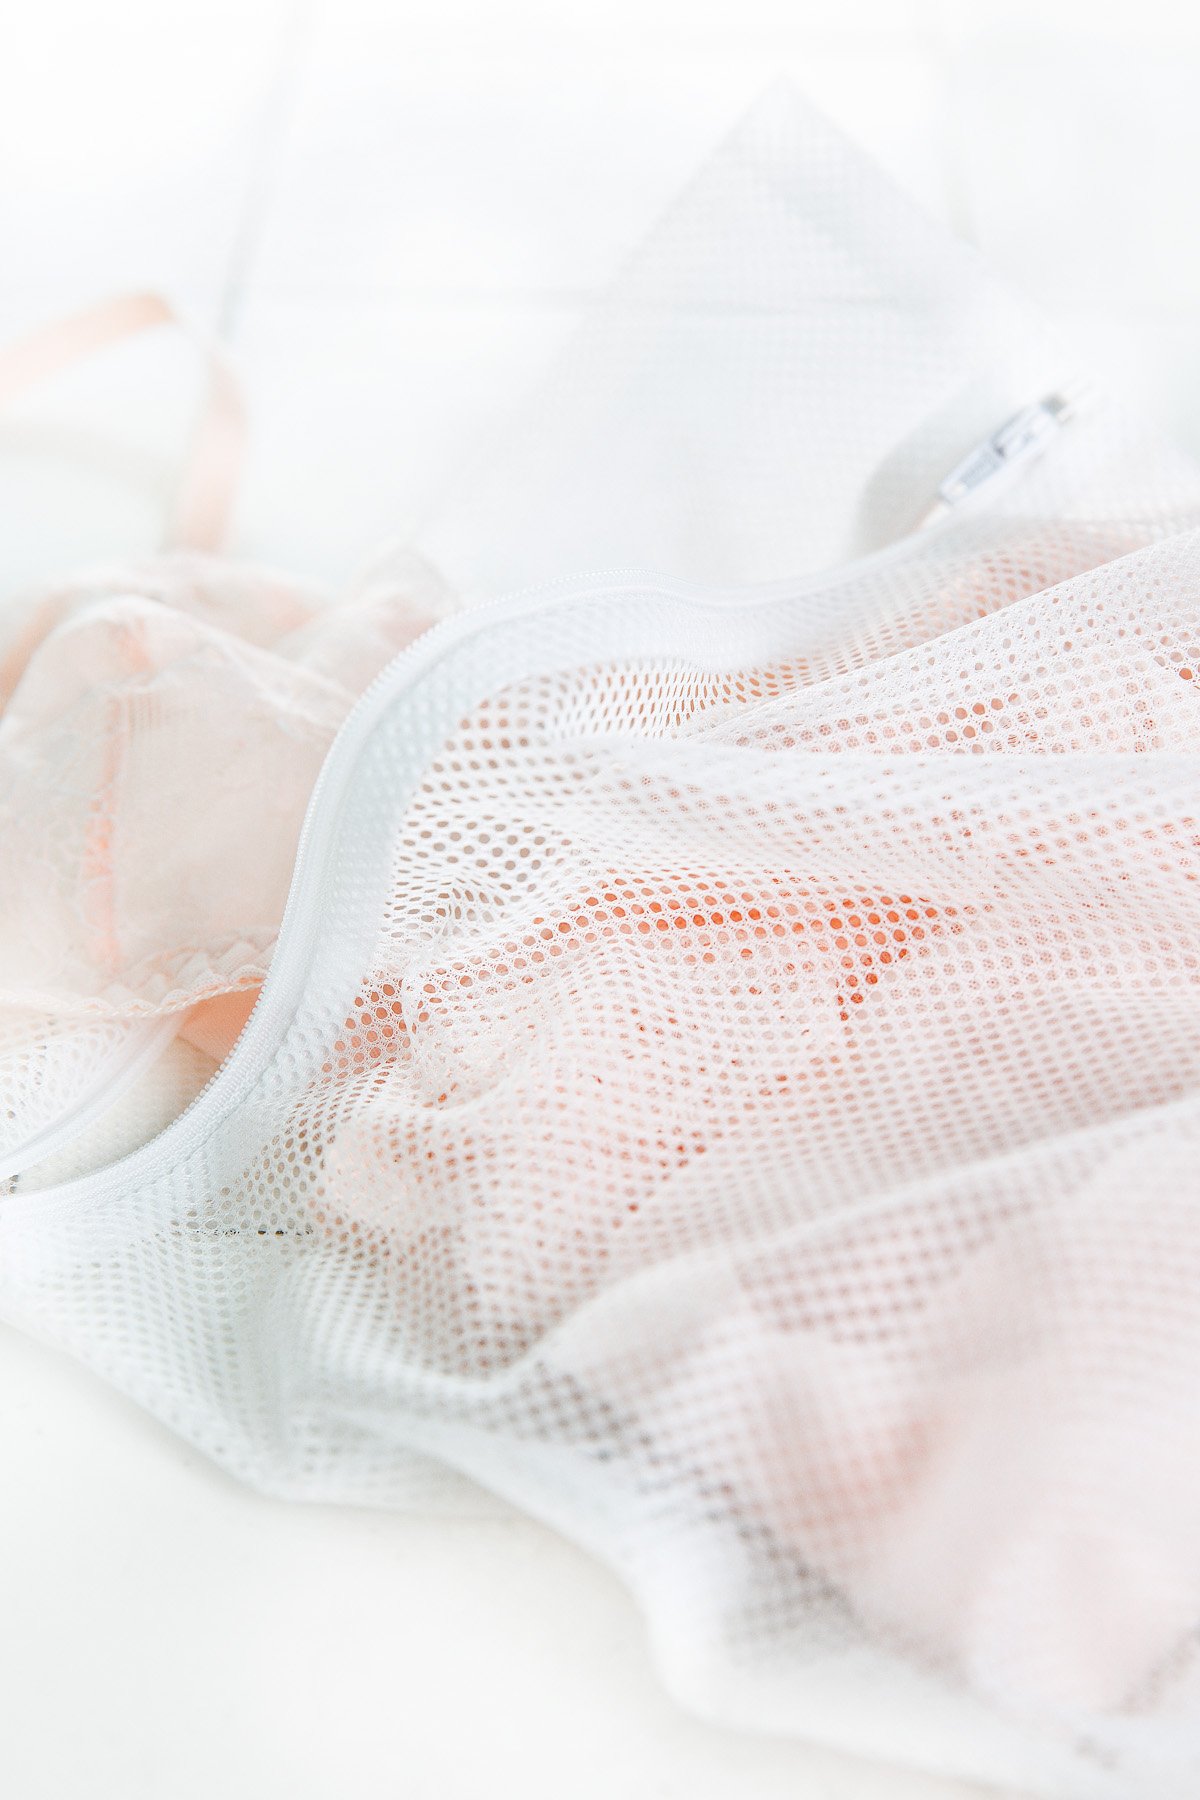 fraktion fodspor centeret Vaskepose til dit lingeri - Køb online